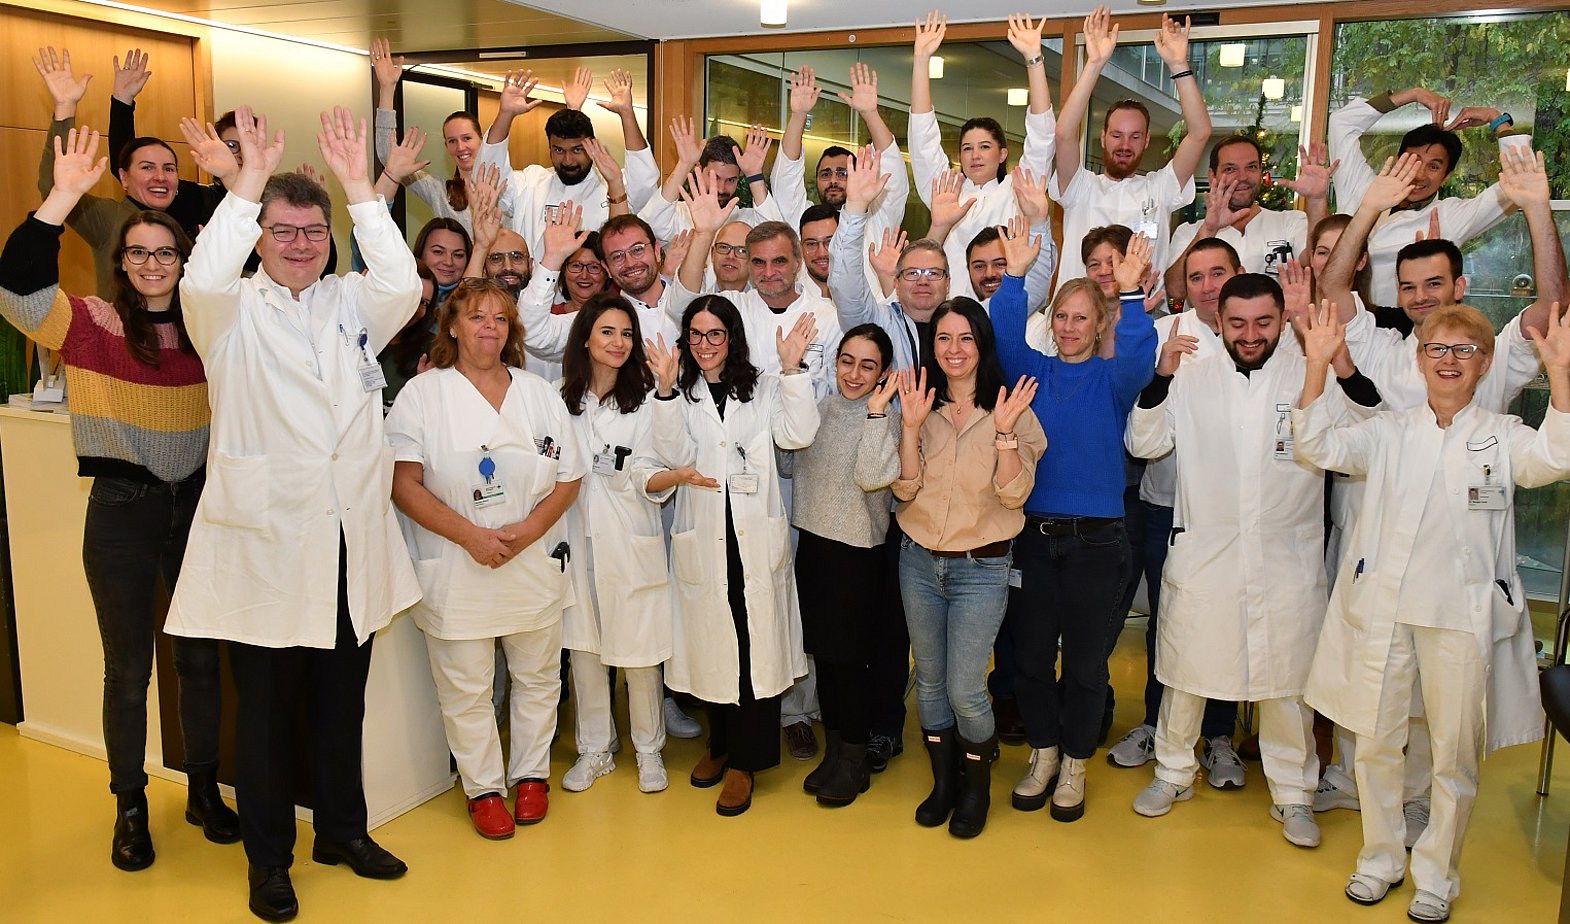 Ärzte, Chirurgen und Mitarbeiter der Herzchirurgie heben die Hände nach oben und lachen